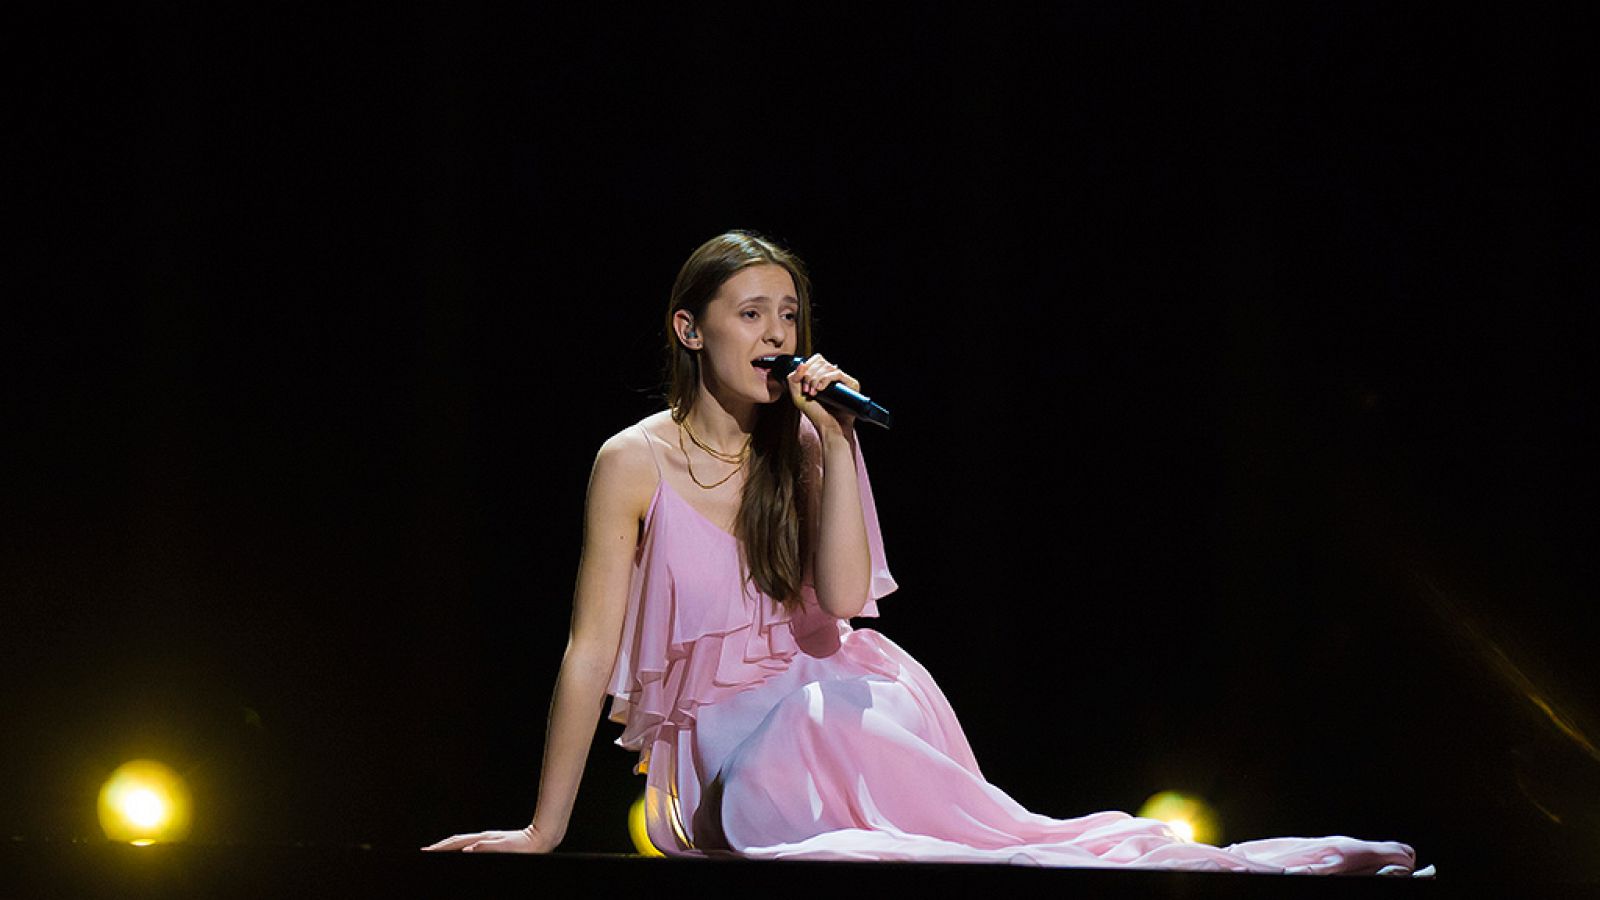 Eurovisión - Lituania: Ieva Zasimauskaite canta "When we're old" en la final de Eurovisión 2018